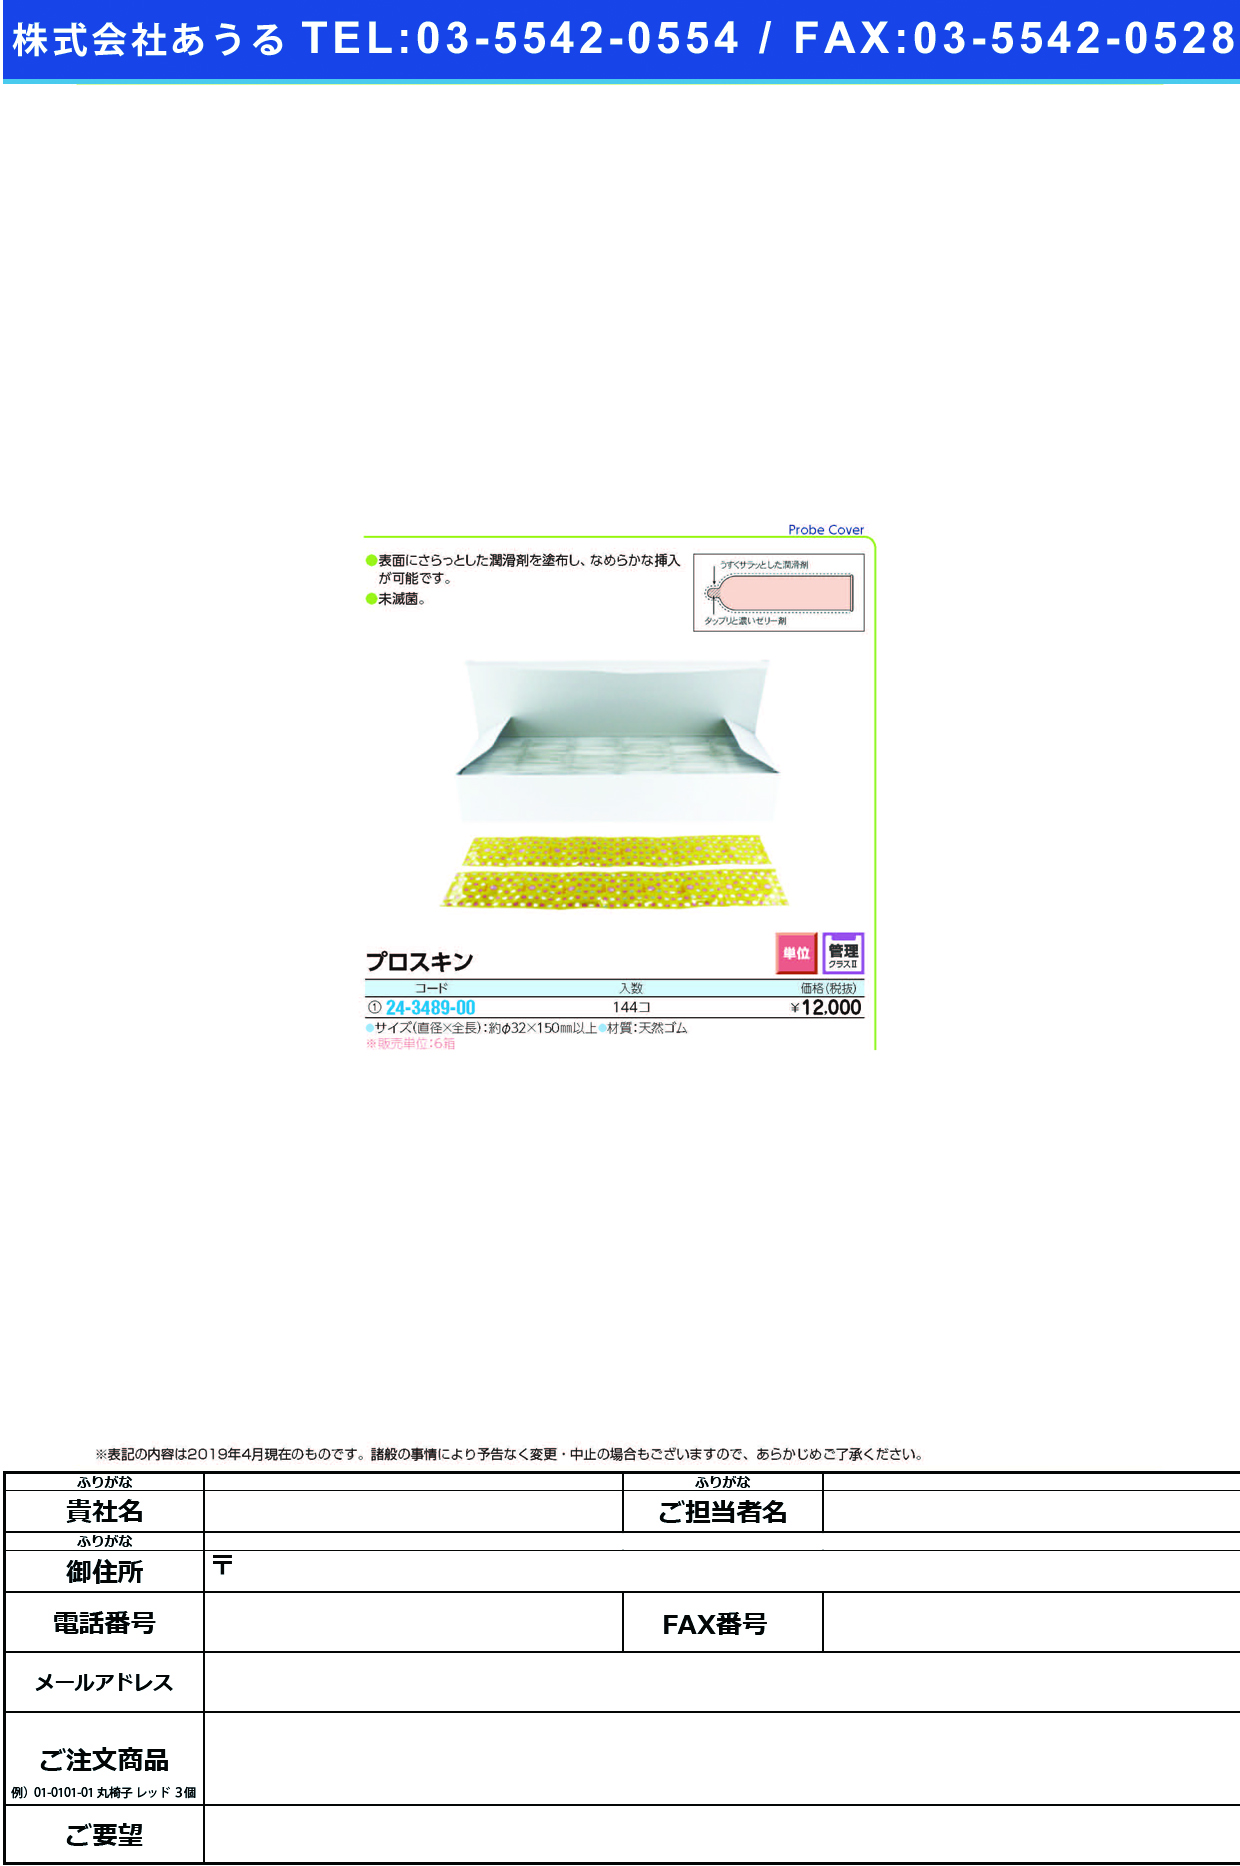 (24-3489-00)プロスキン 144ｺｲﾘ ﾌﾟﾛｽｷﾝ(ジェクス)【6箱単位】【2019年カタログ商品】